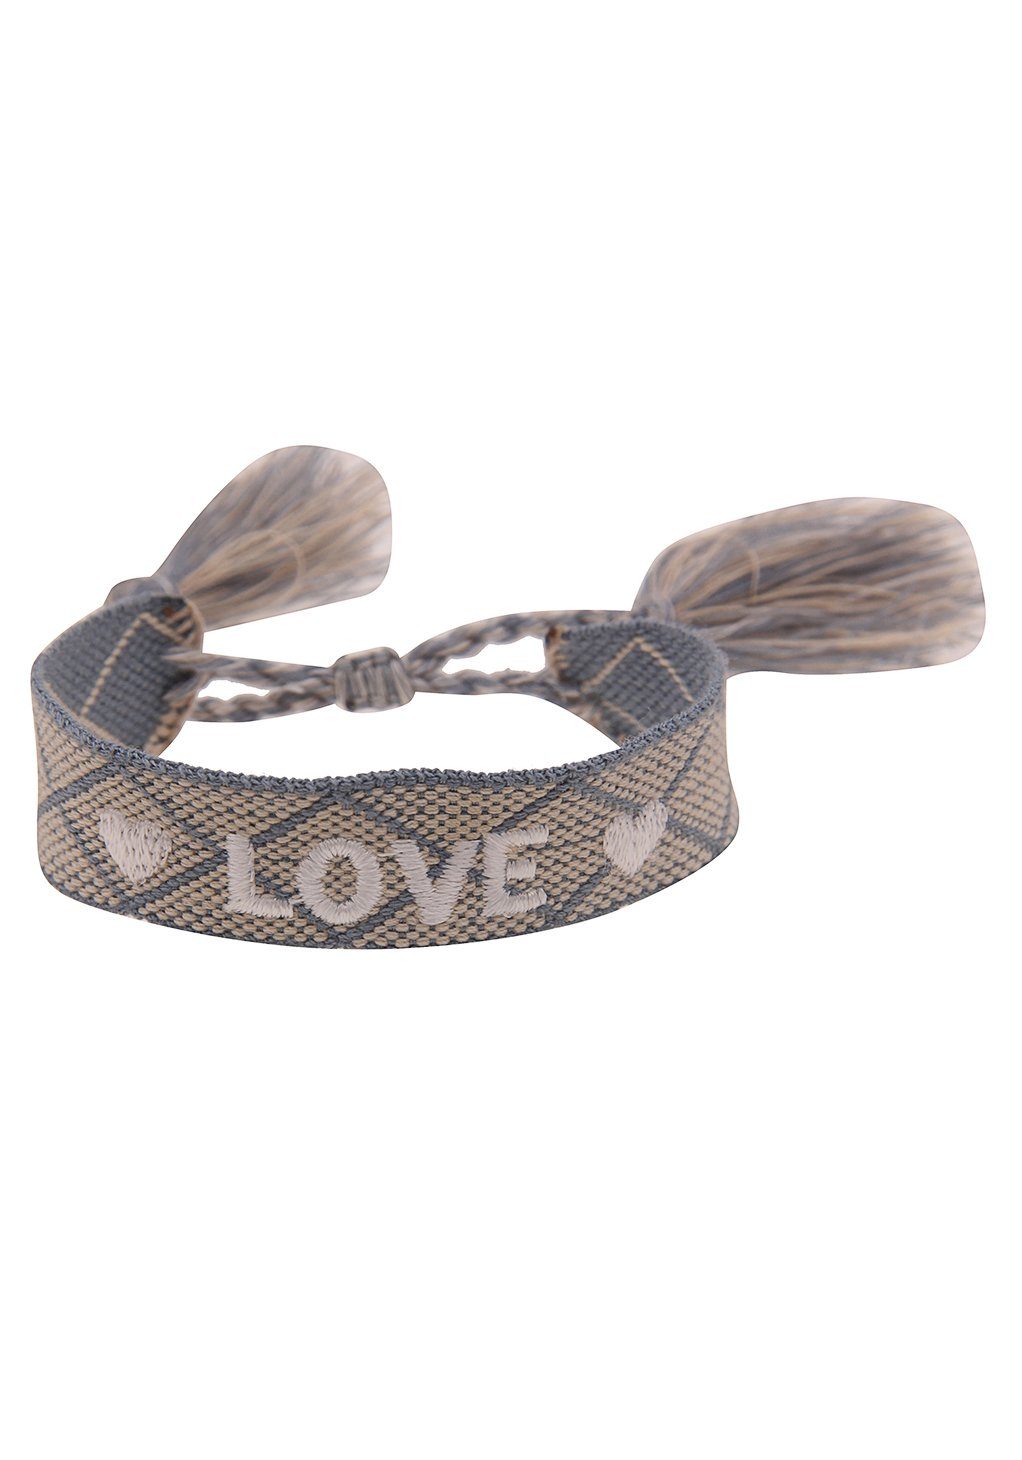 leslii Armband Love, Festival beige-hellblau-weiß 260120408, Armband, 260120412